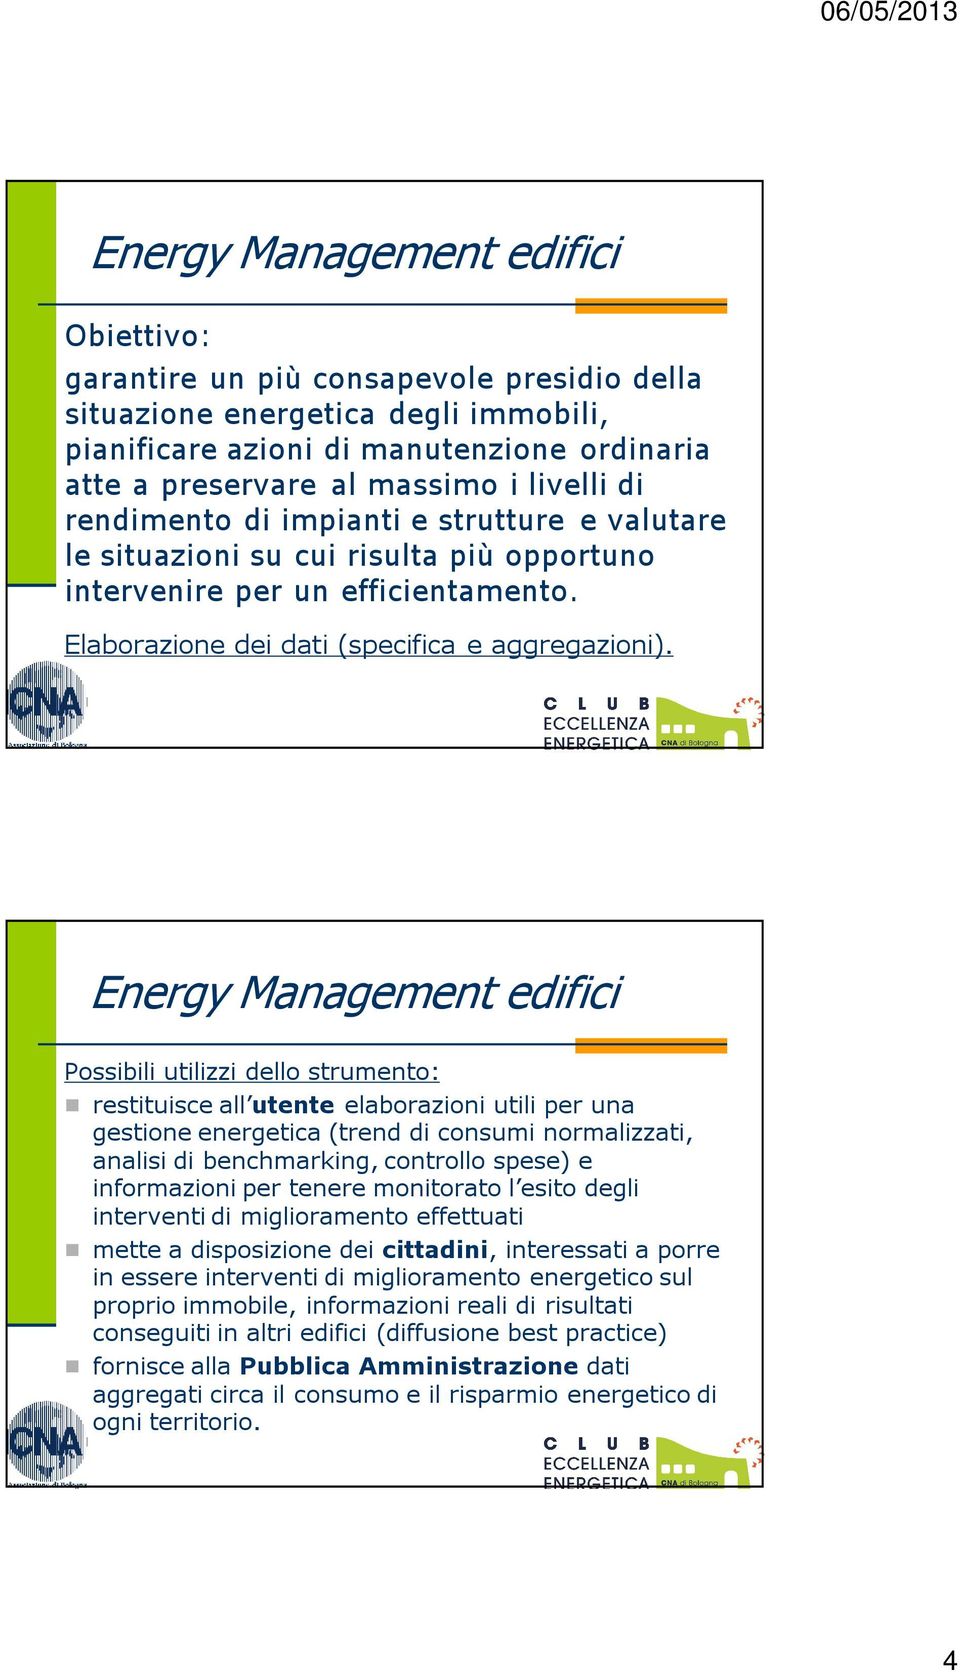 Energy Management edifici Possibili utilizzi dello strumento: restituisce all utente elaborazioni utili per una gestione energetica (trend di consumi normalizzati, analisi di benchmarking, controllo